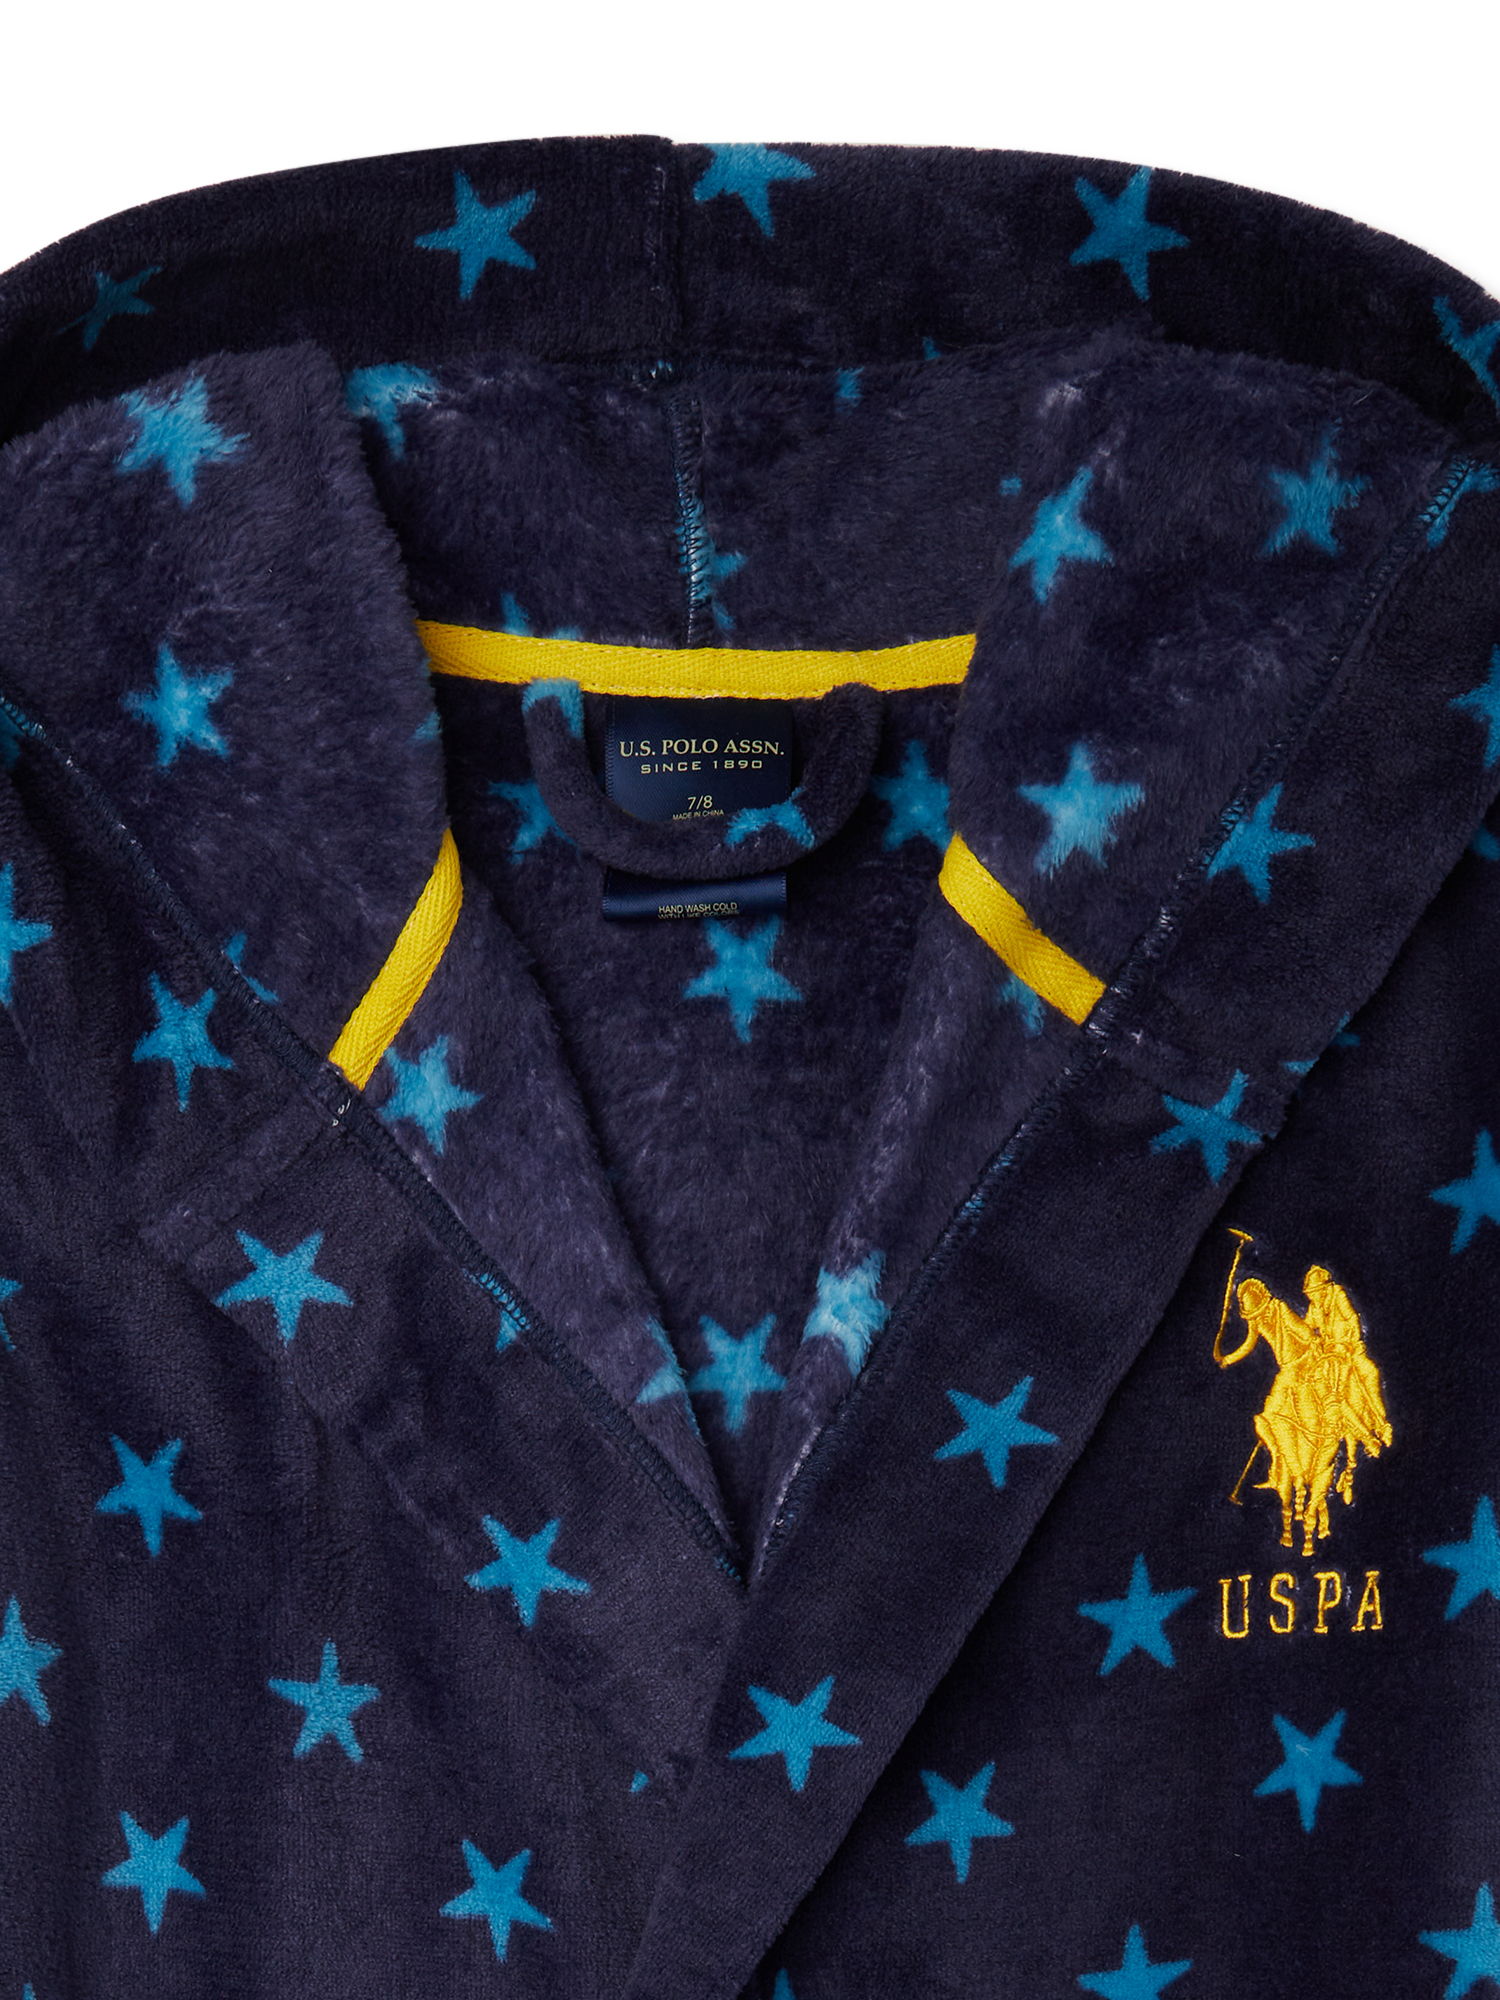 U.S. Polo Assn. Boys’ Plush Robe, Sizes 7-16 - image 3 of 4